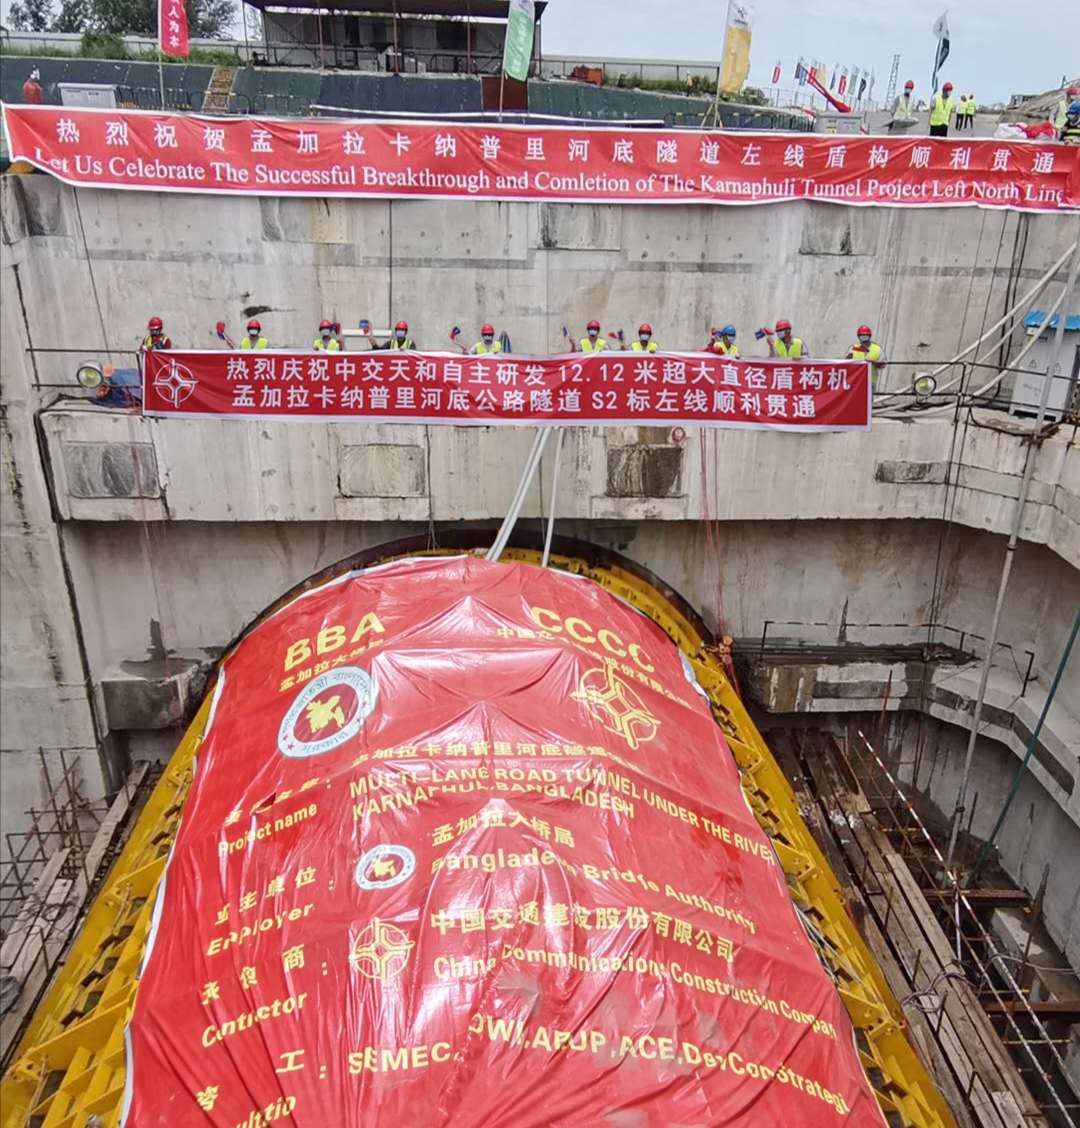 中国出口海外首台超大直径盾构机贯通首条隧道